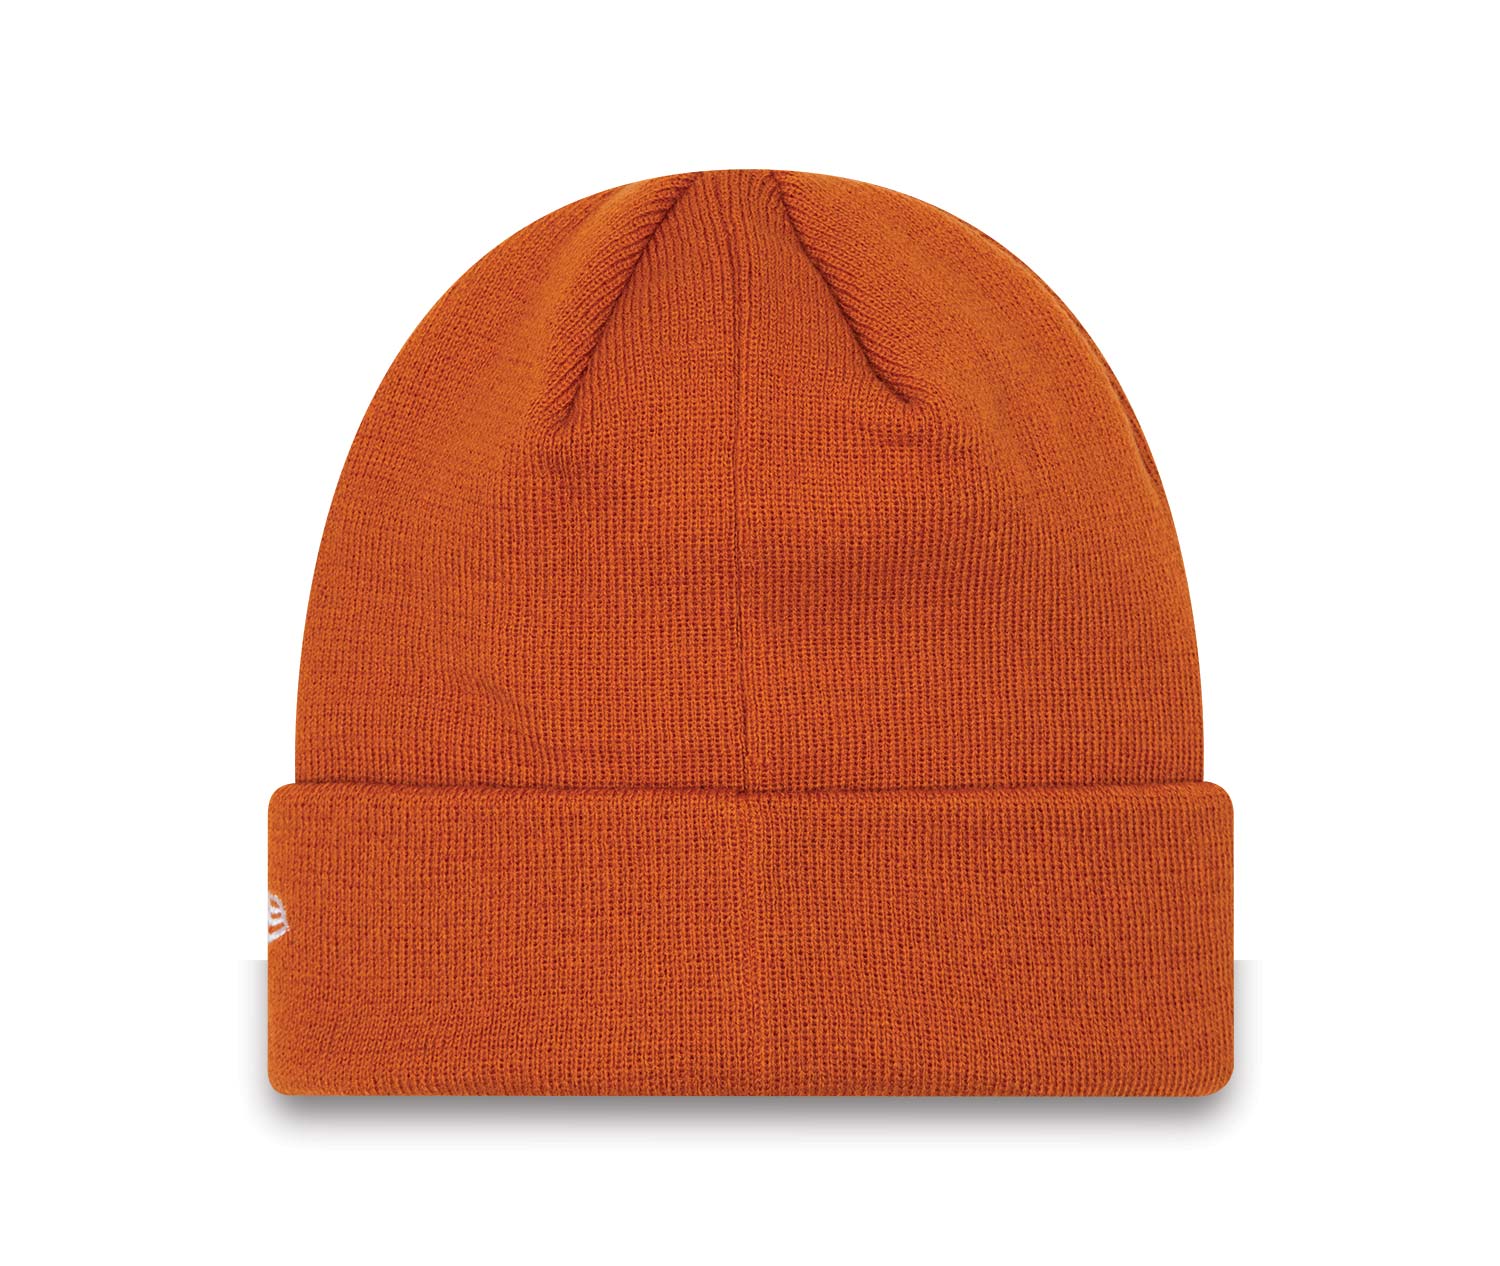 sconto 93% Promod Cappello e berretto Arancione Unica MODA DONNA Accessori Cappello e berretto Arancione 